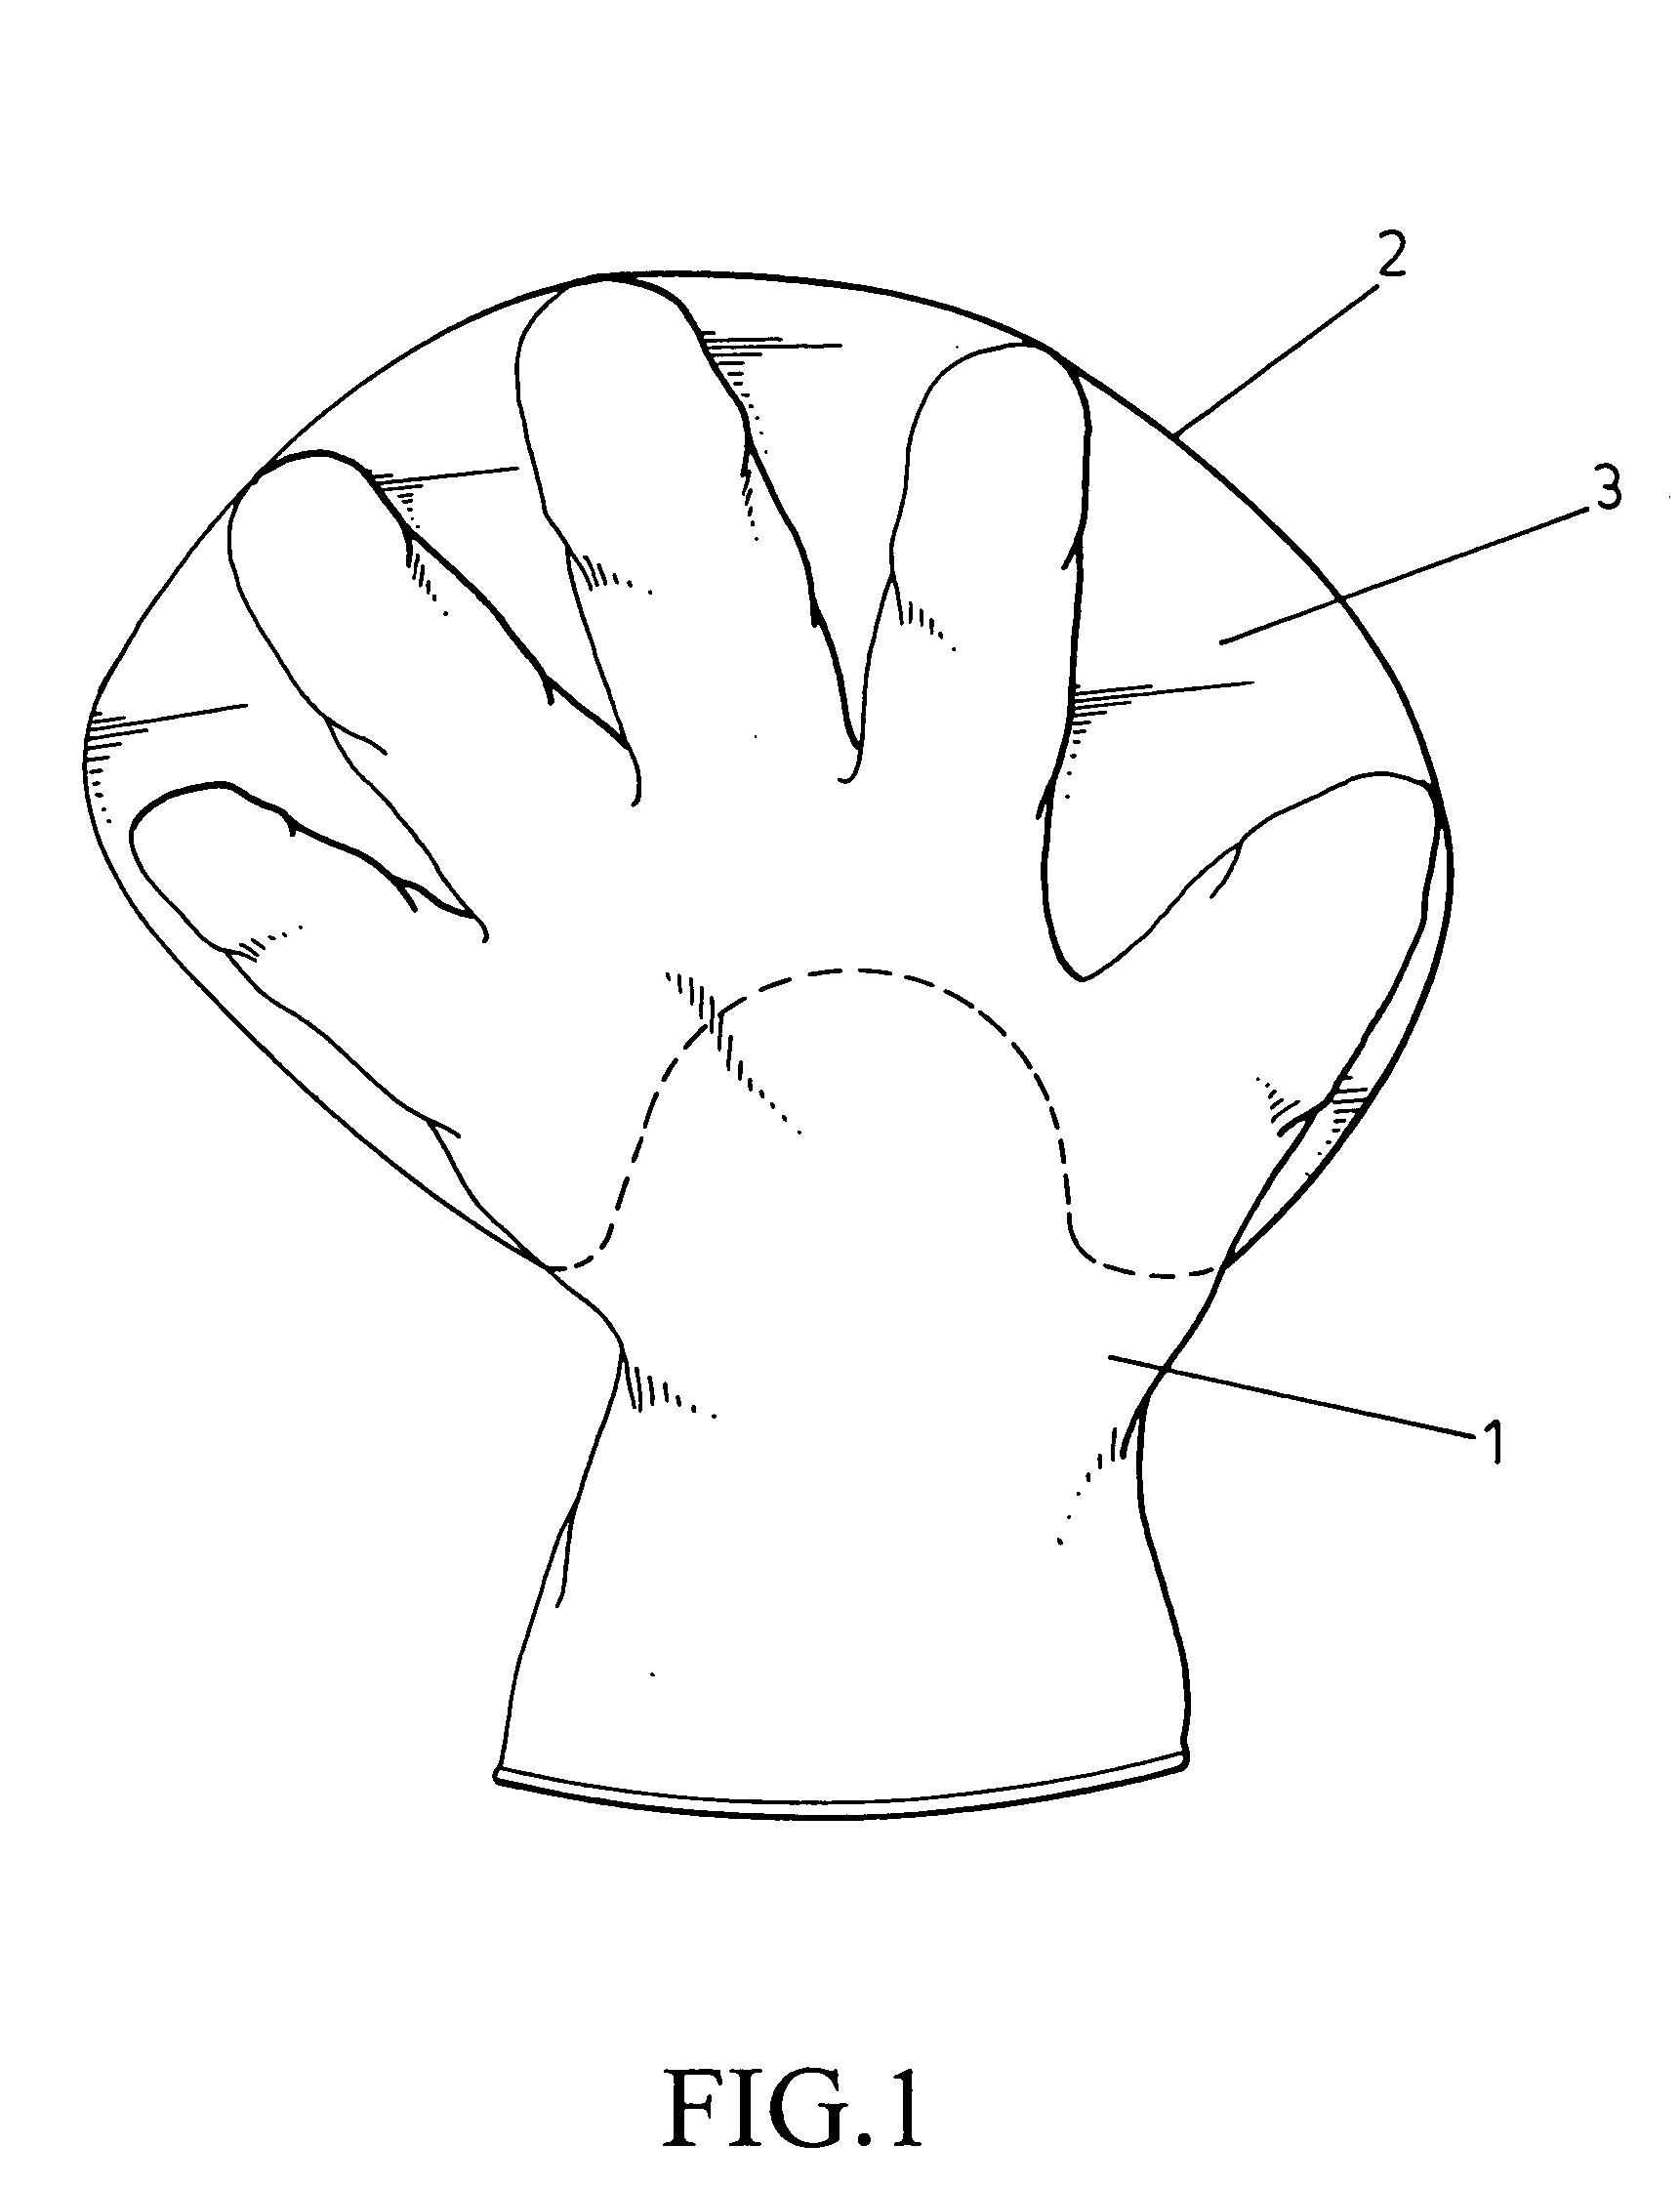 Glove structure